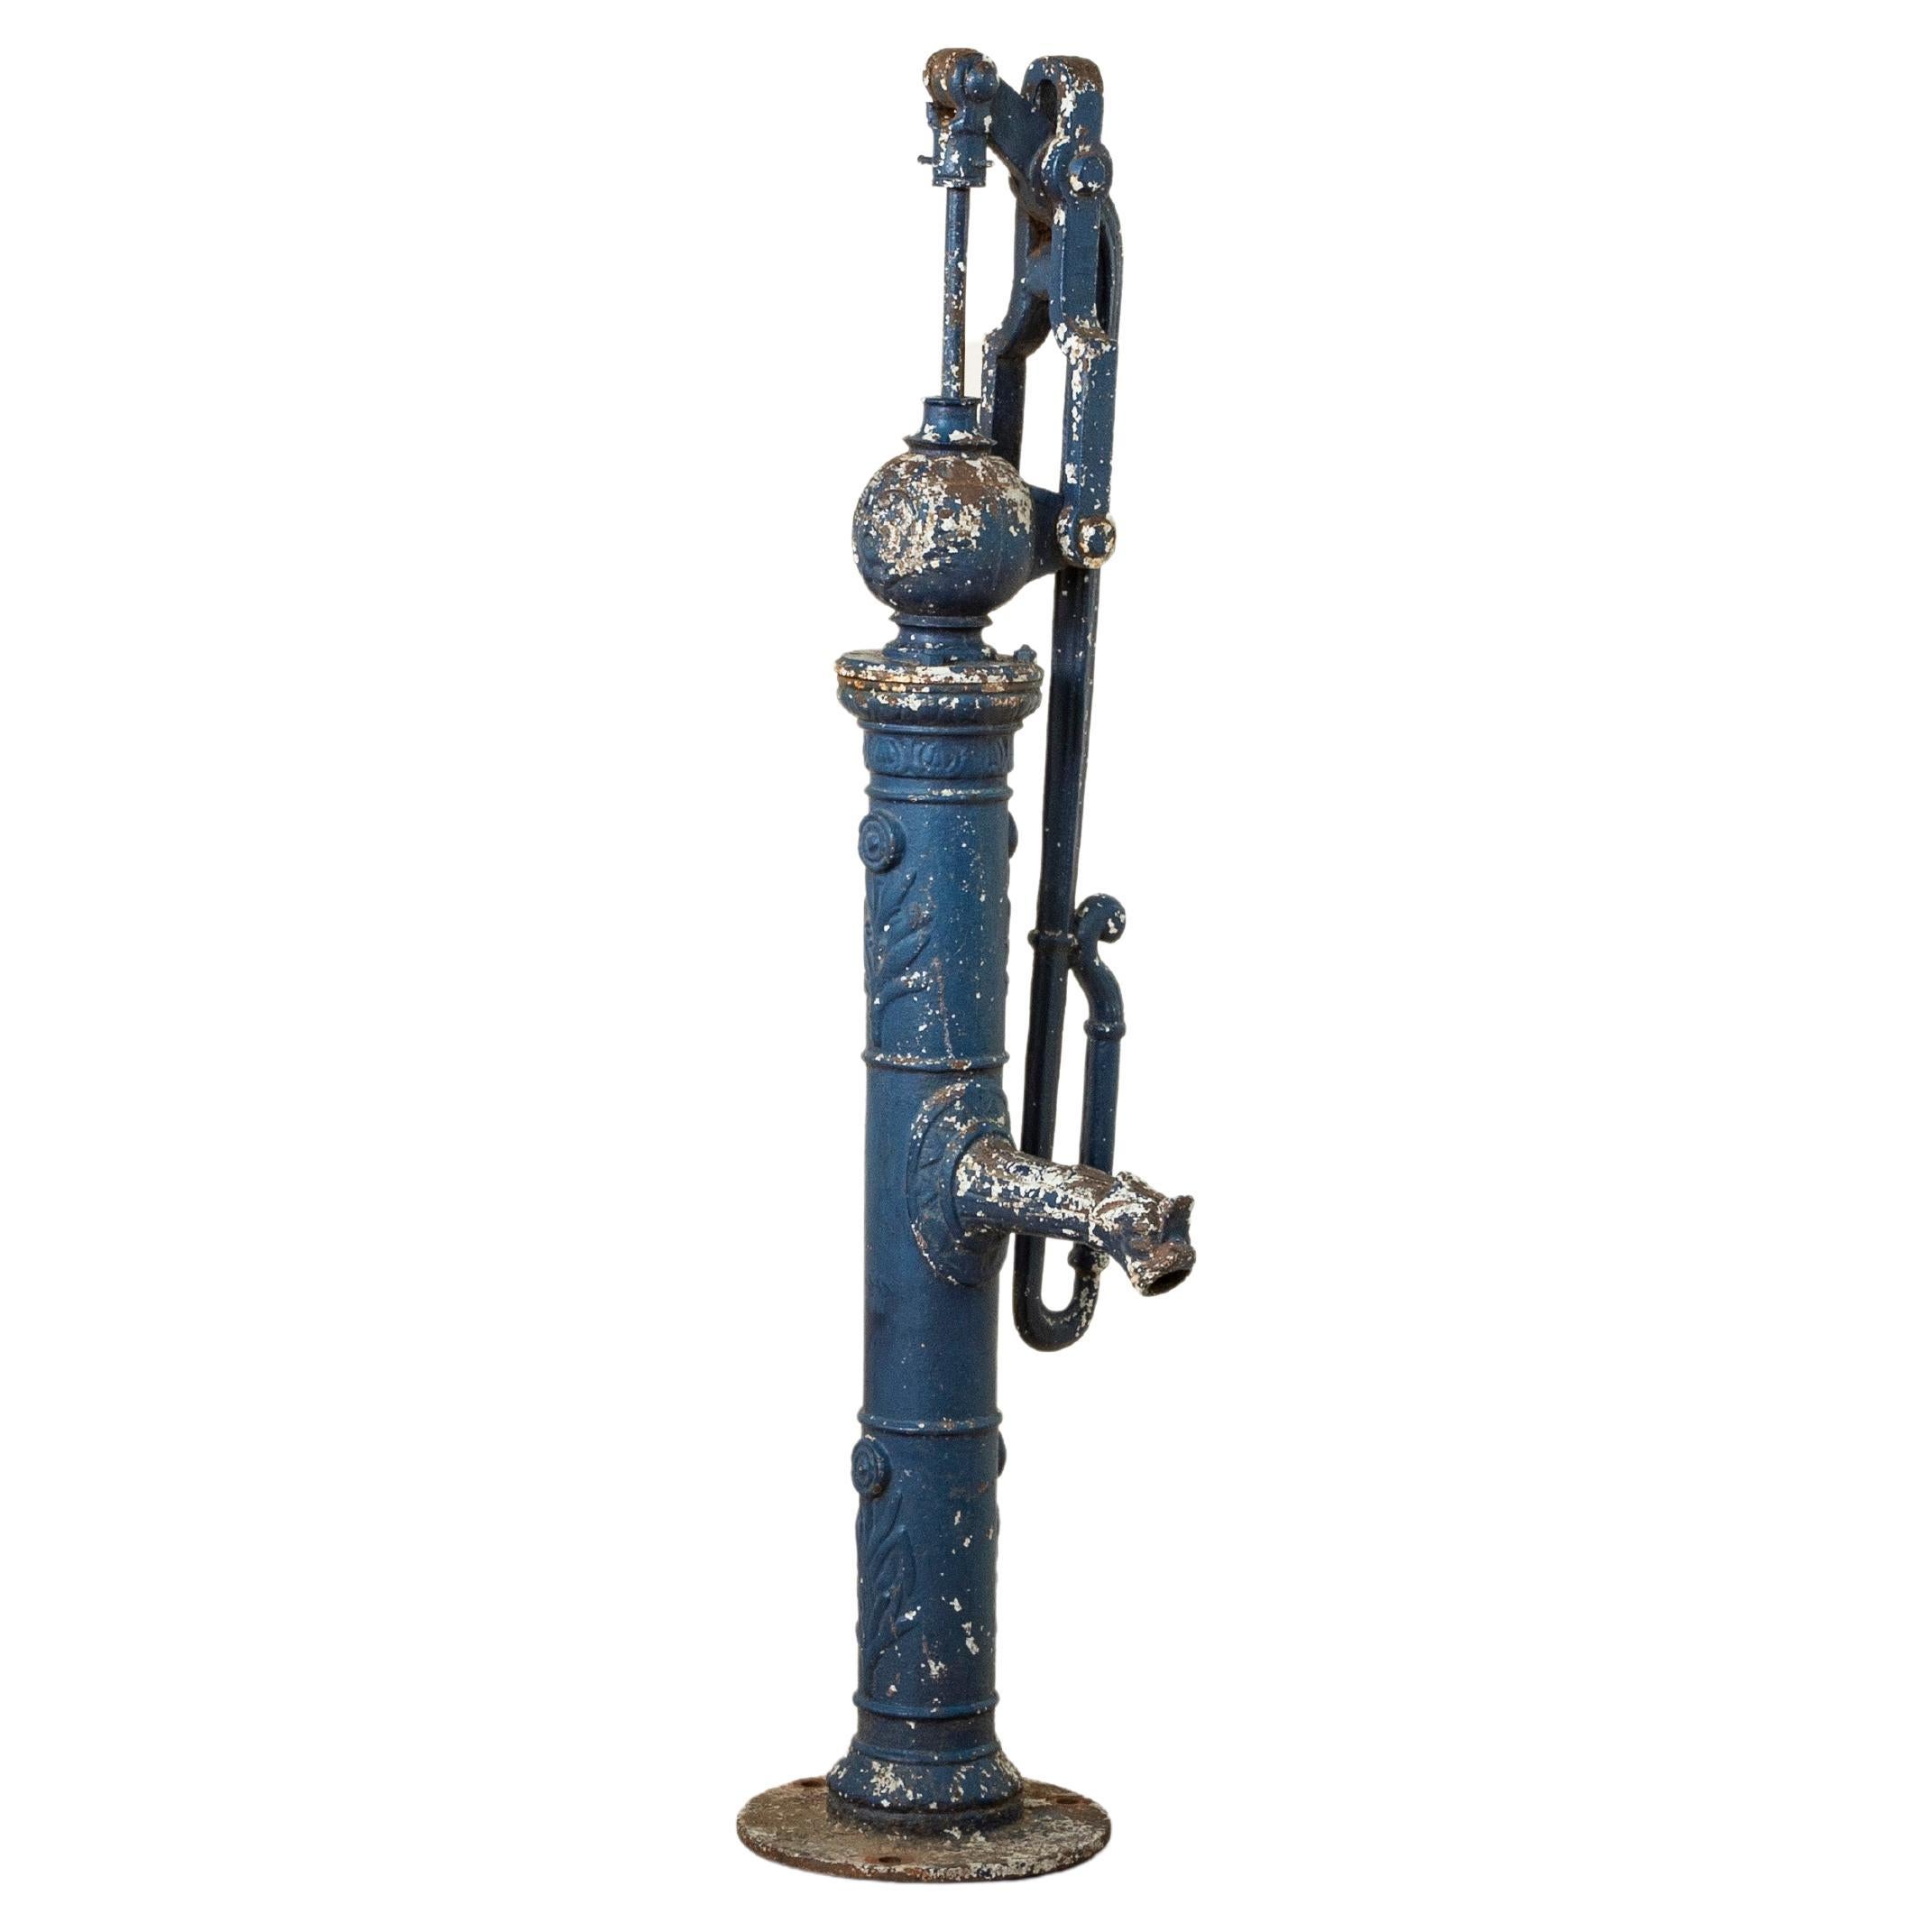 Pompe ou fontaine en fonte de Normandie du milieu du XIXe siècle